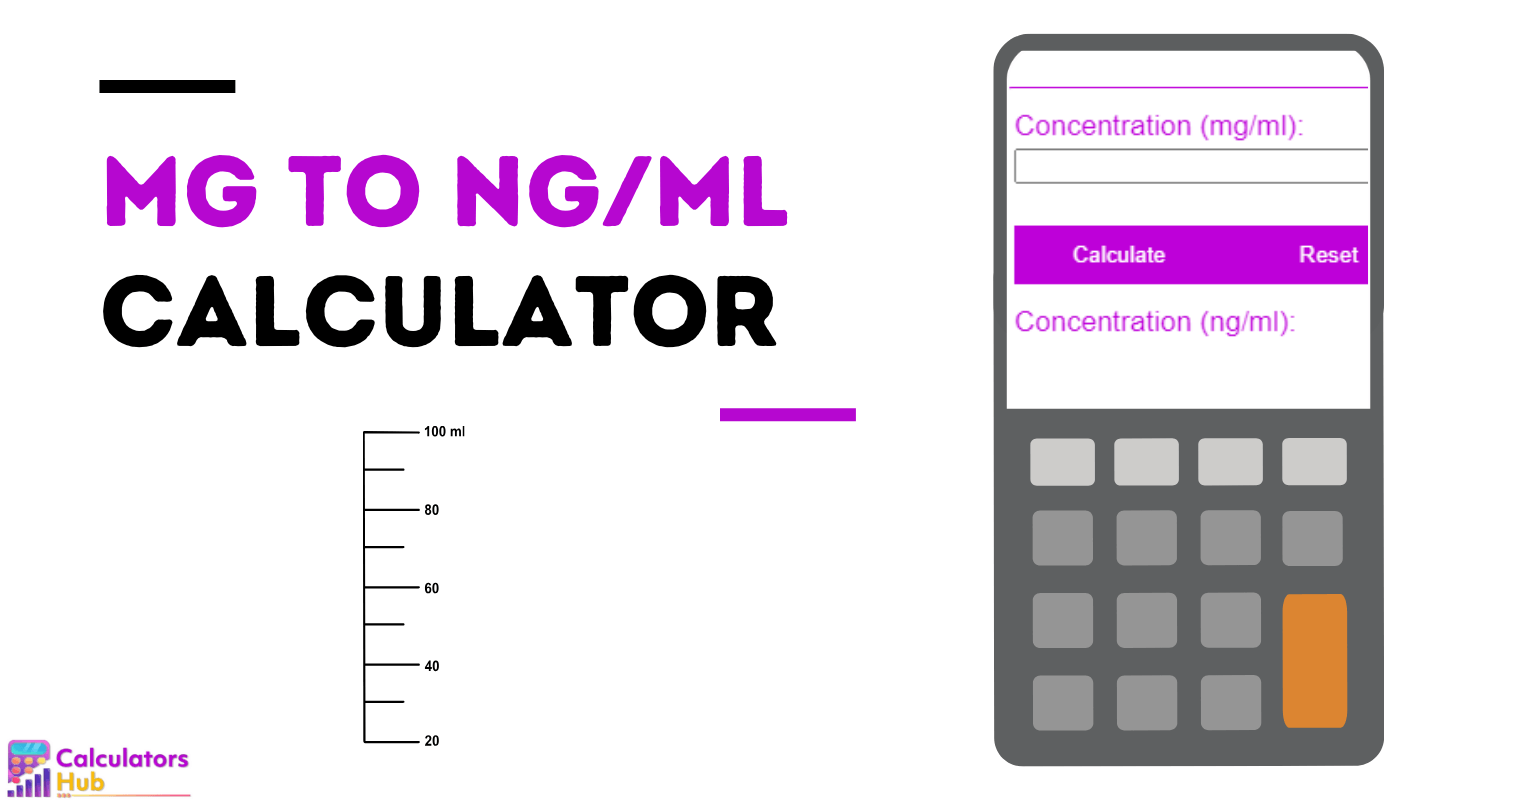 mg to ng/ml Calculator